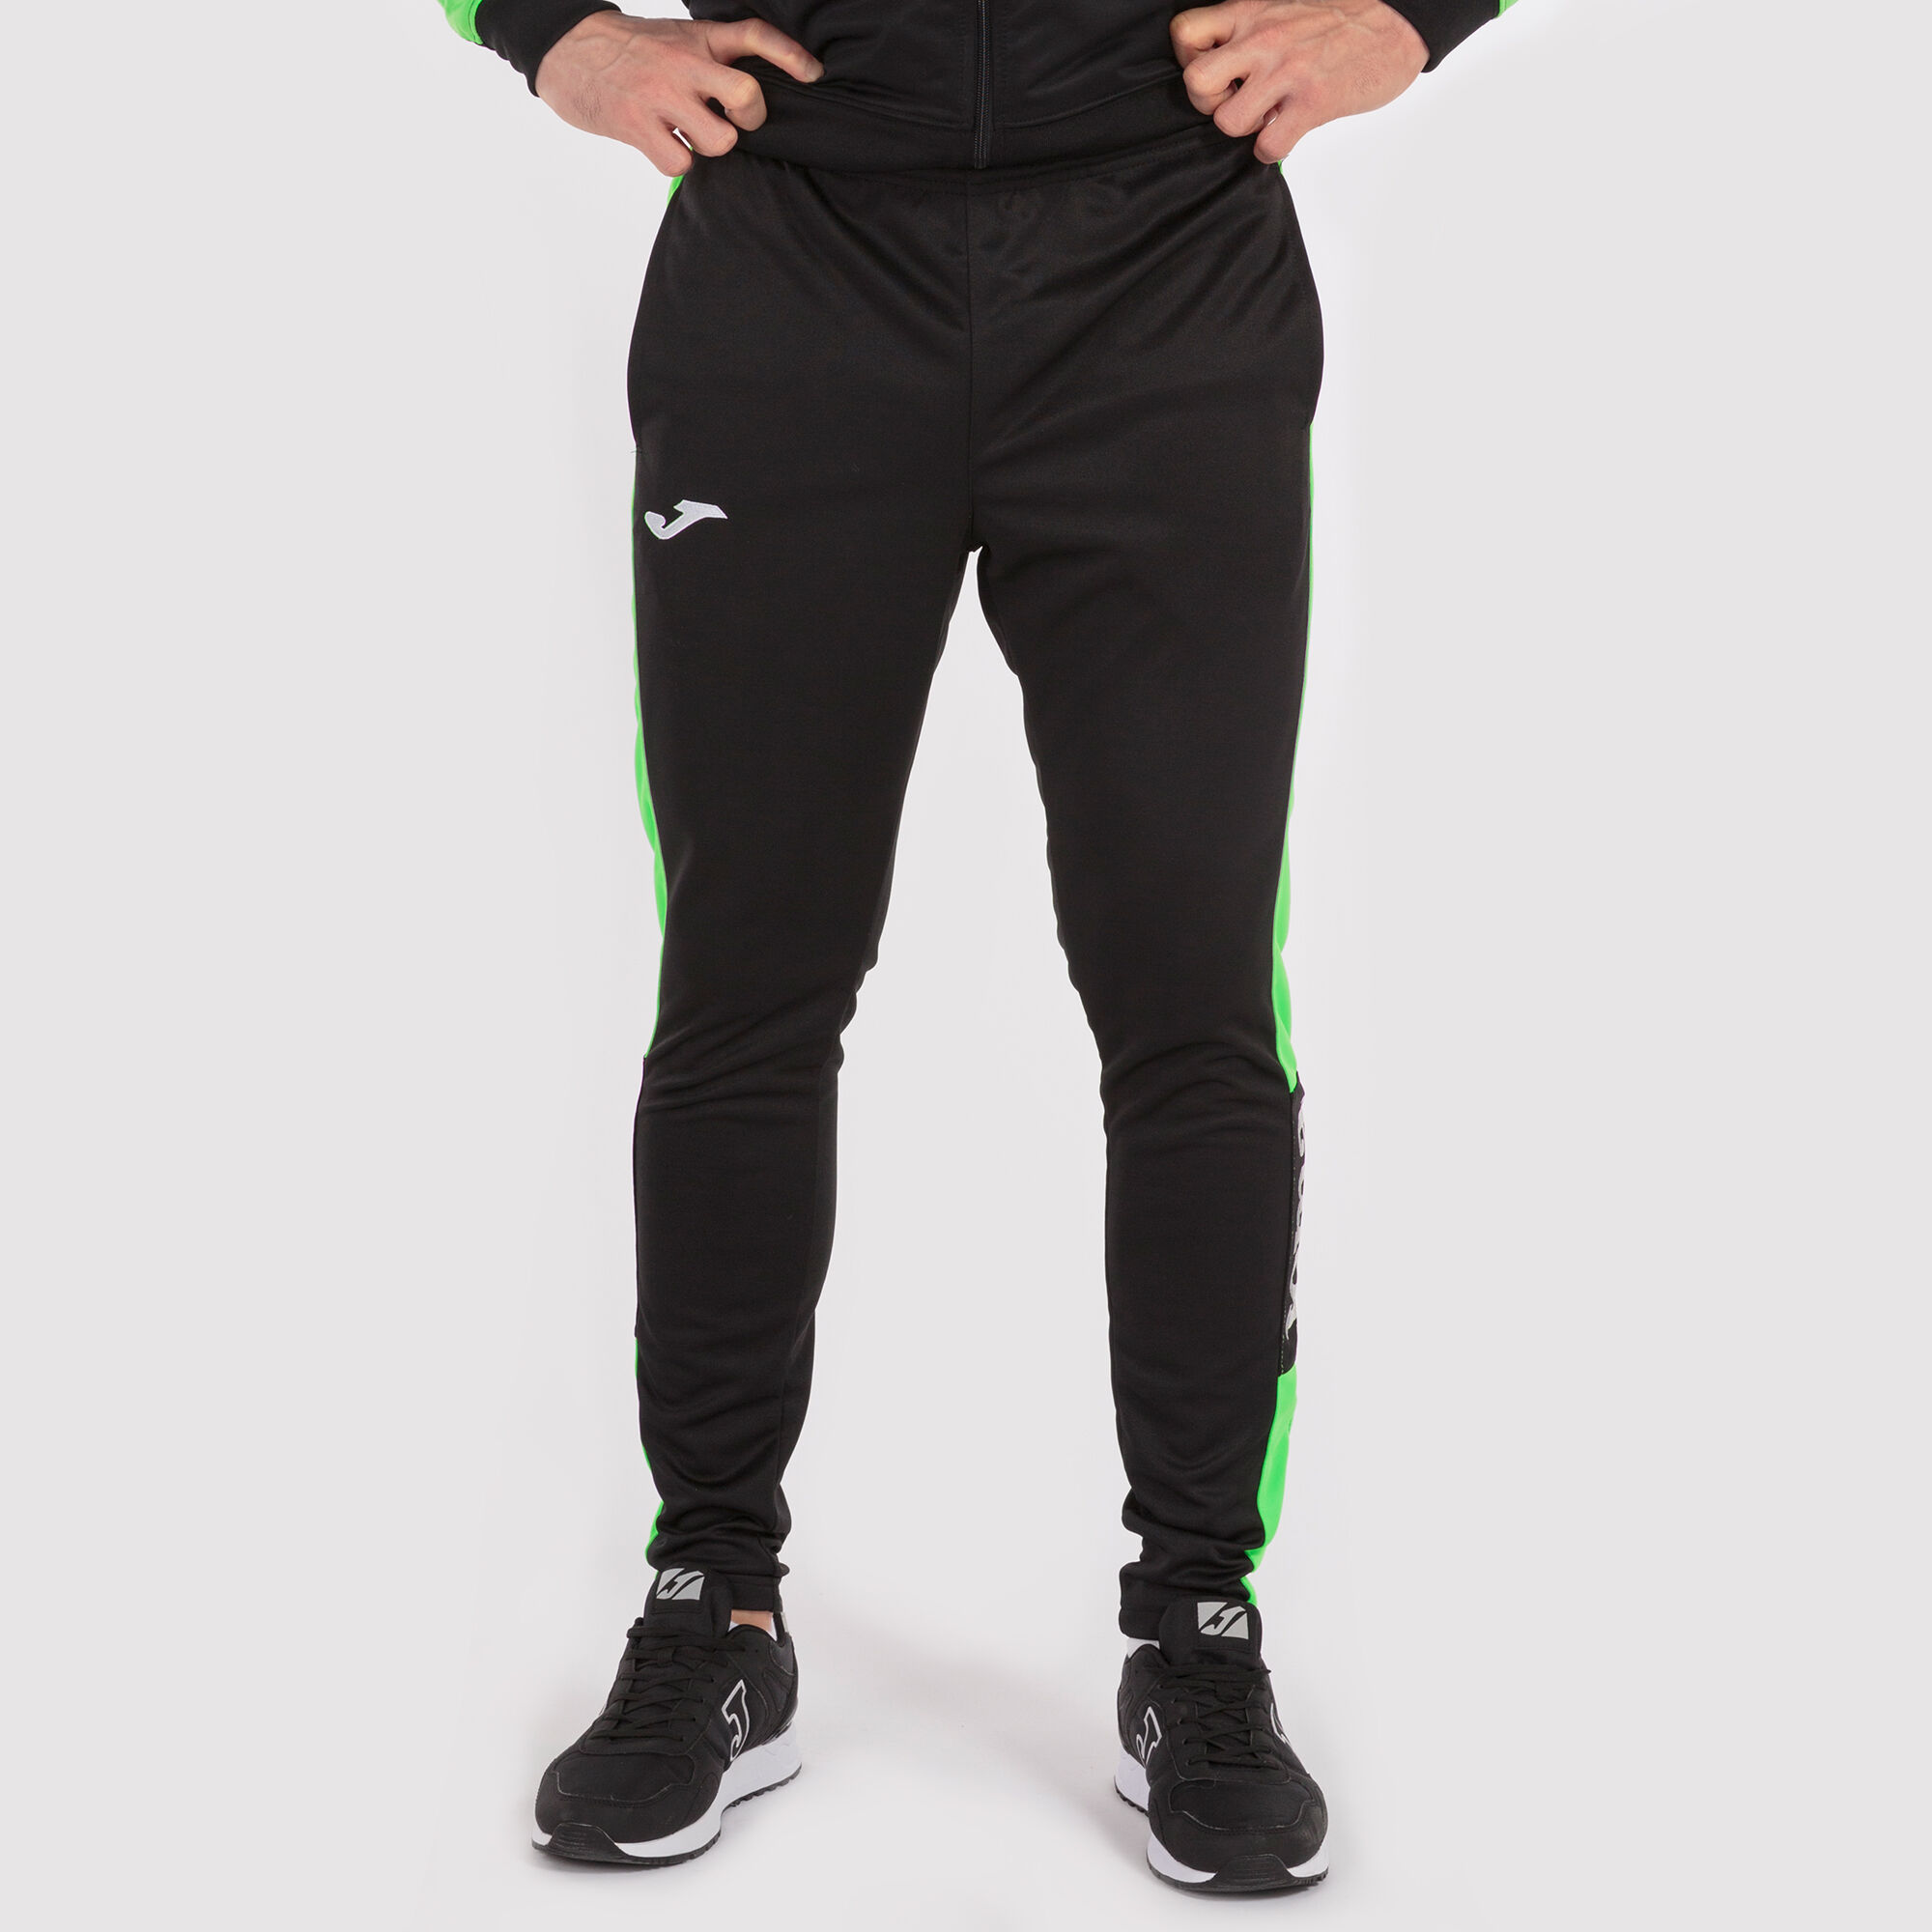 Pantalón largo hombre Championship IV negro verde flúor